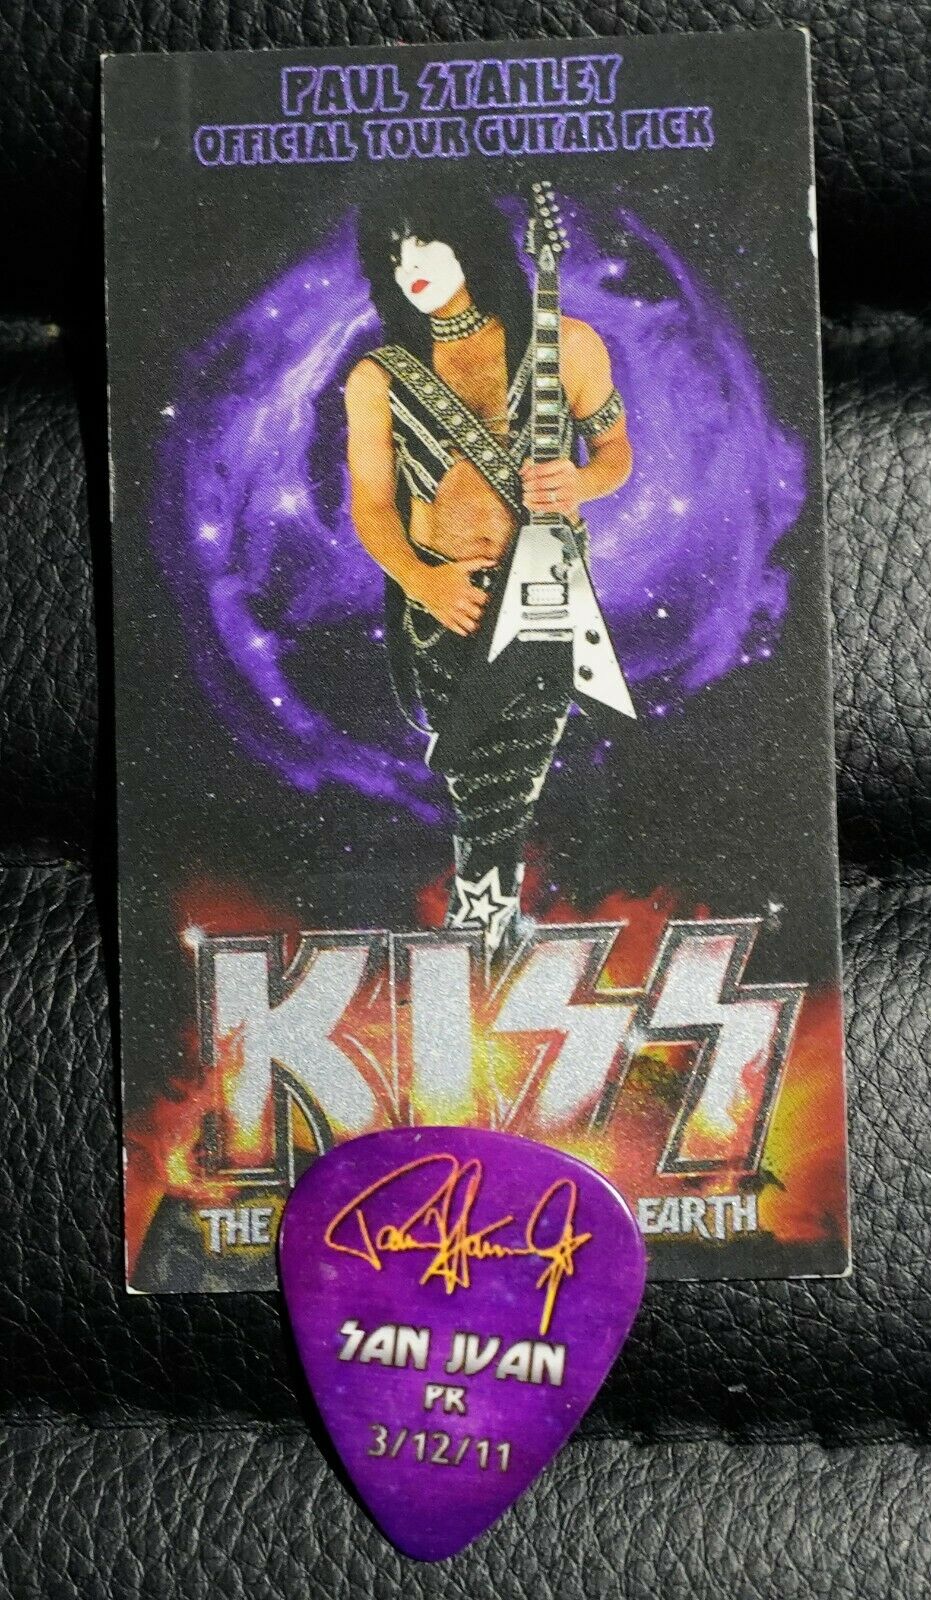 Kiss 031211 San Juan Paul Stanley Guitar Pick Hottest Show Earth Tour